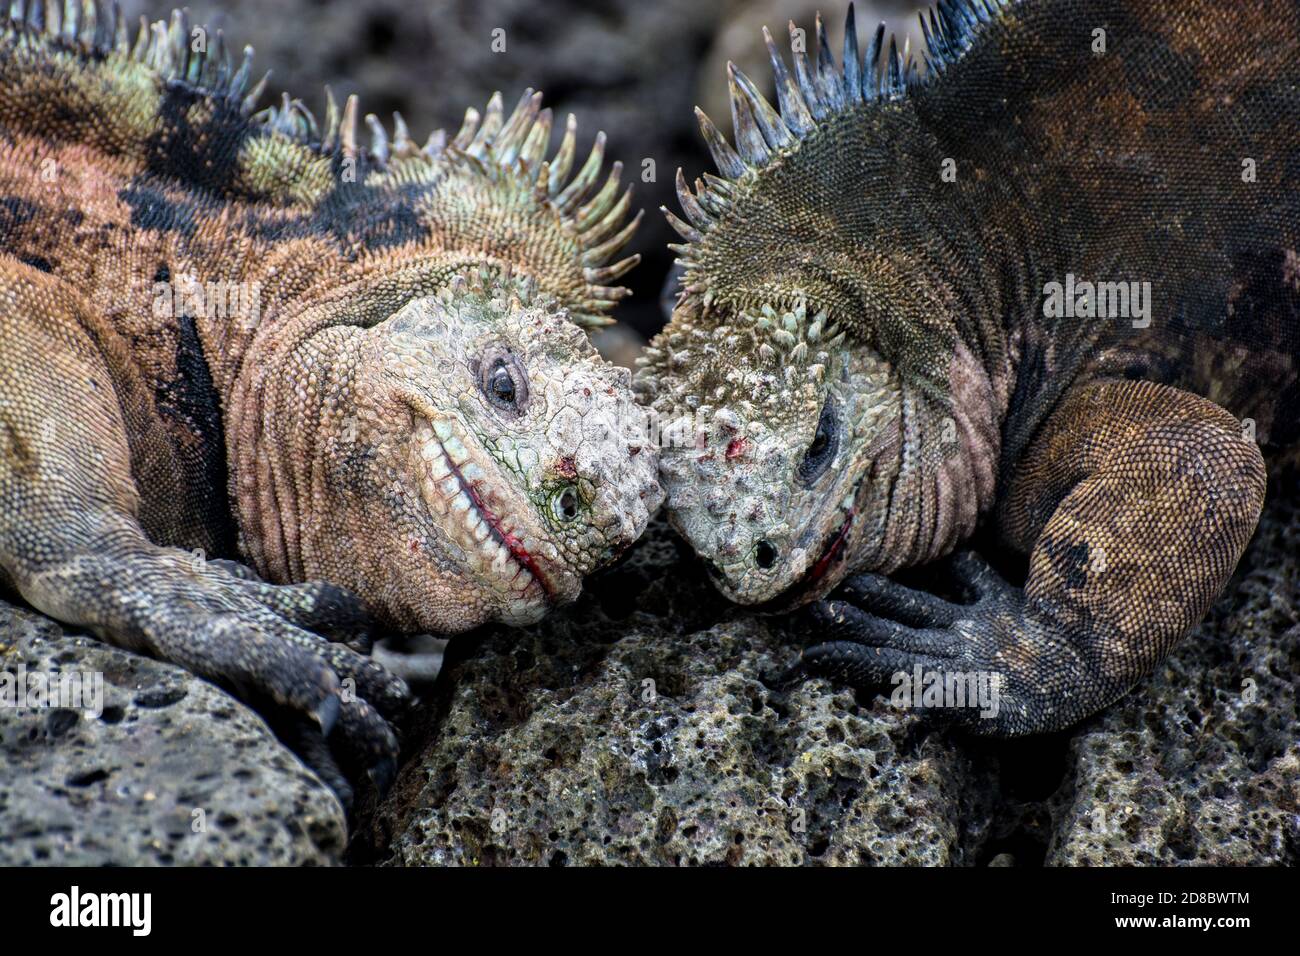 Deux iguanes marins mâles (Amblyrhynchus cristatus) se battent sur le territoire en faisant leur tête. Banque D'Images